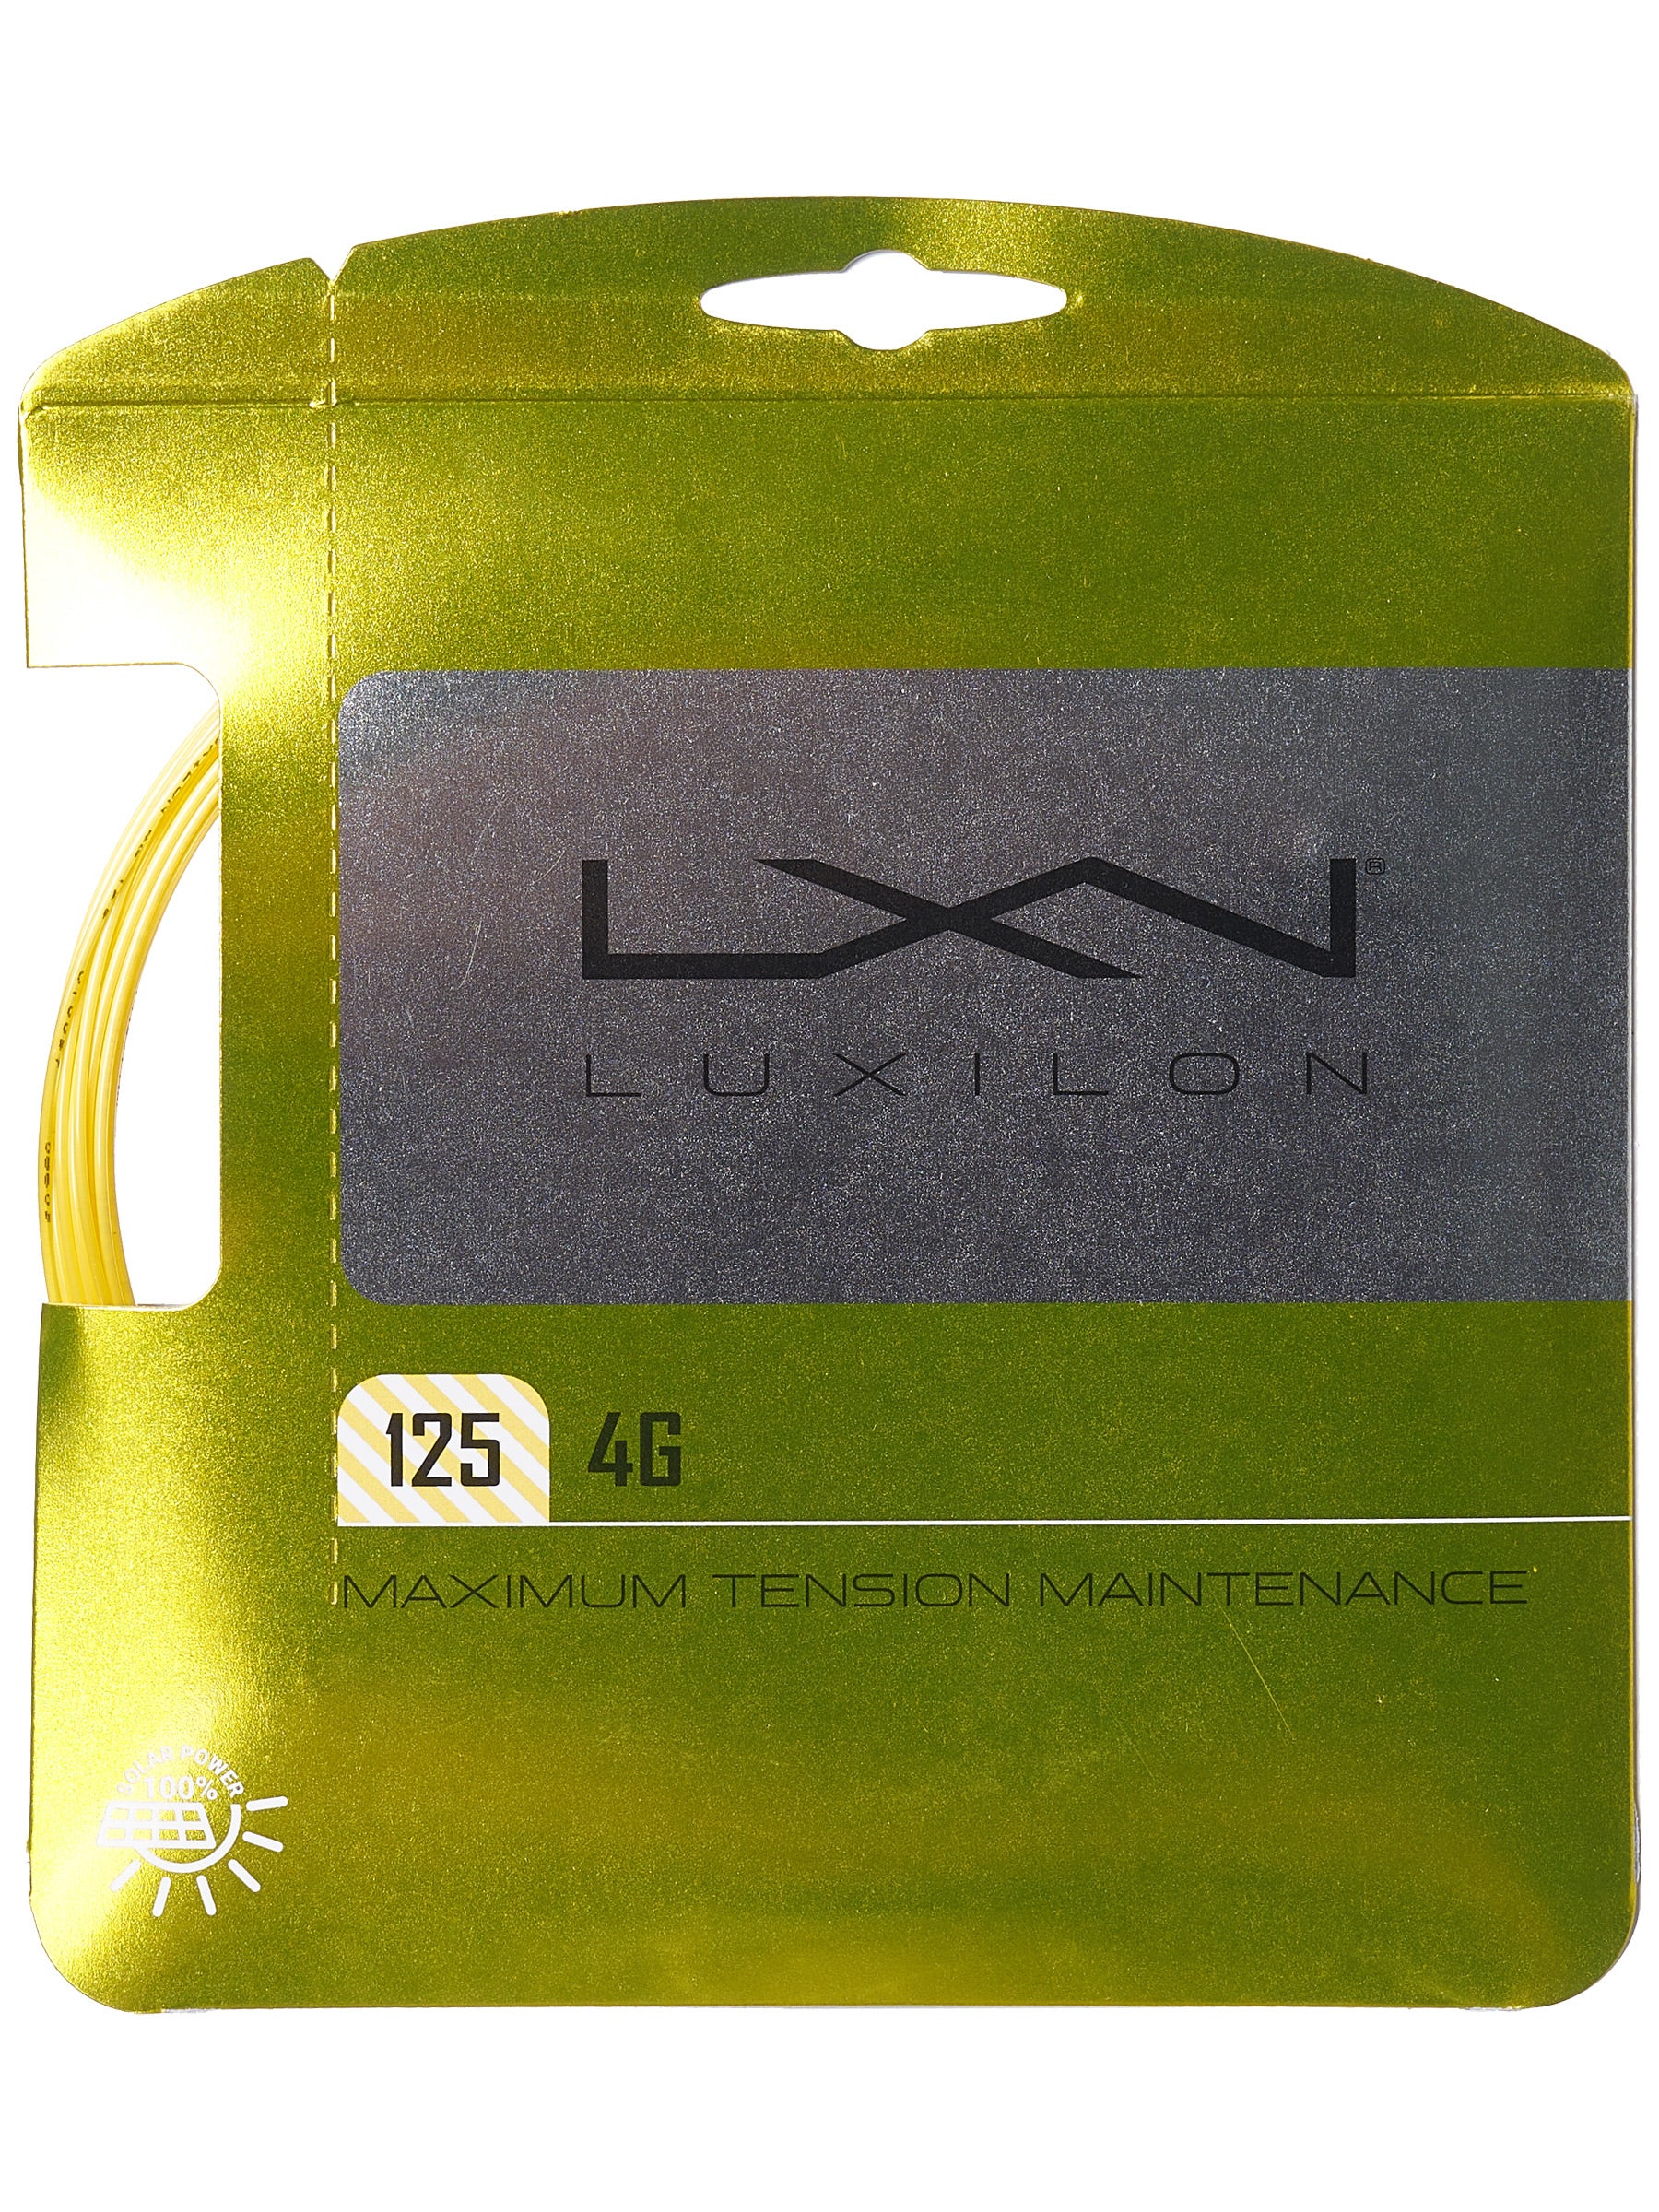 12m Set Luxilon 4G Rough 16L 1.25mm Tennis String 